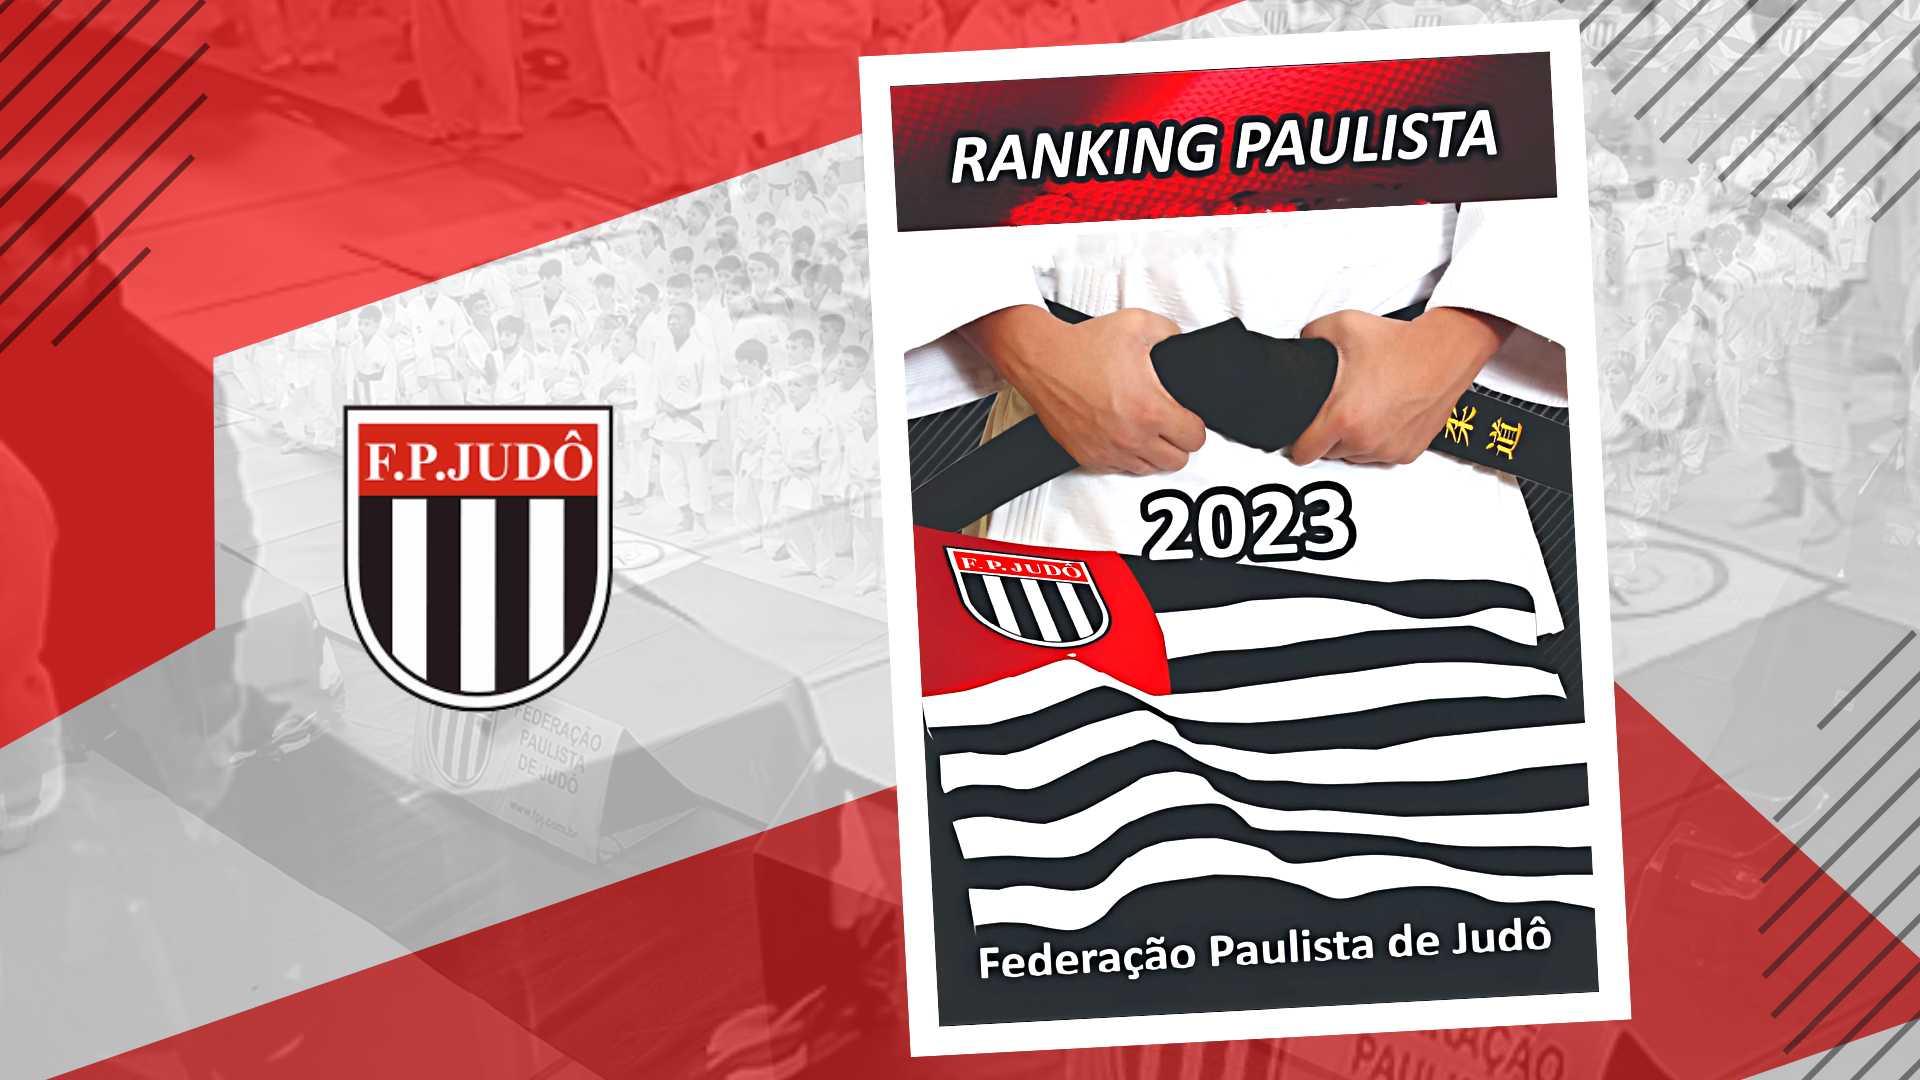 Ranking paulista 2023